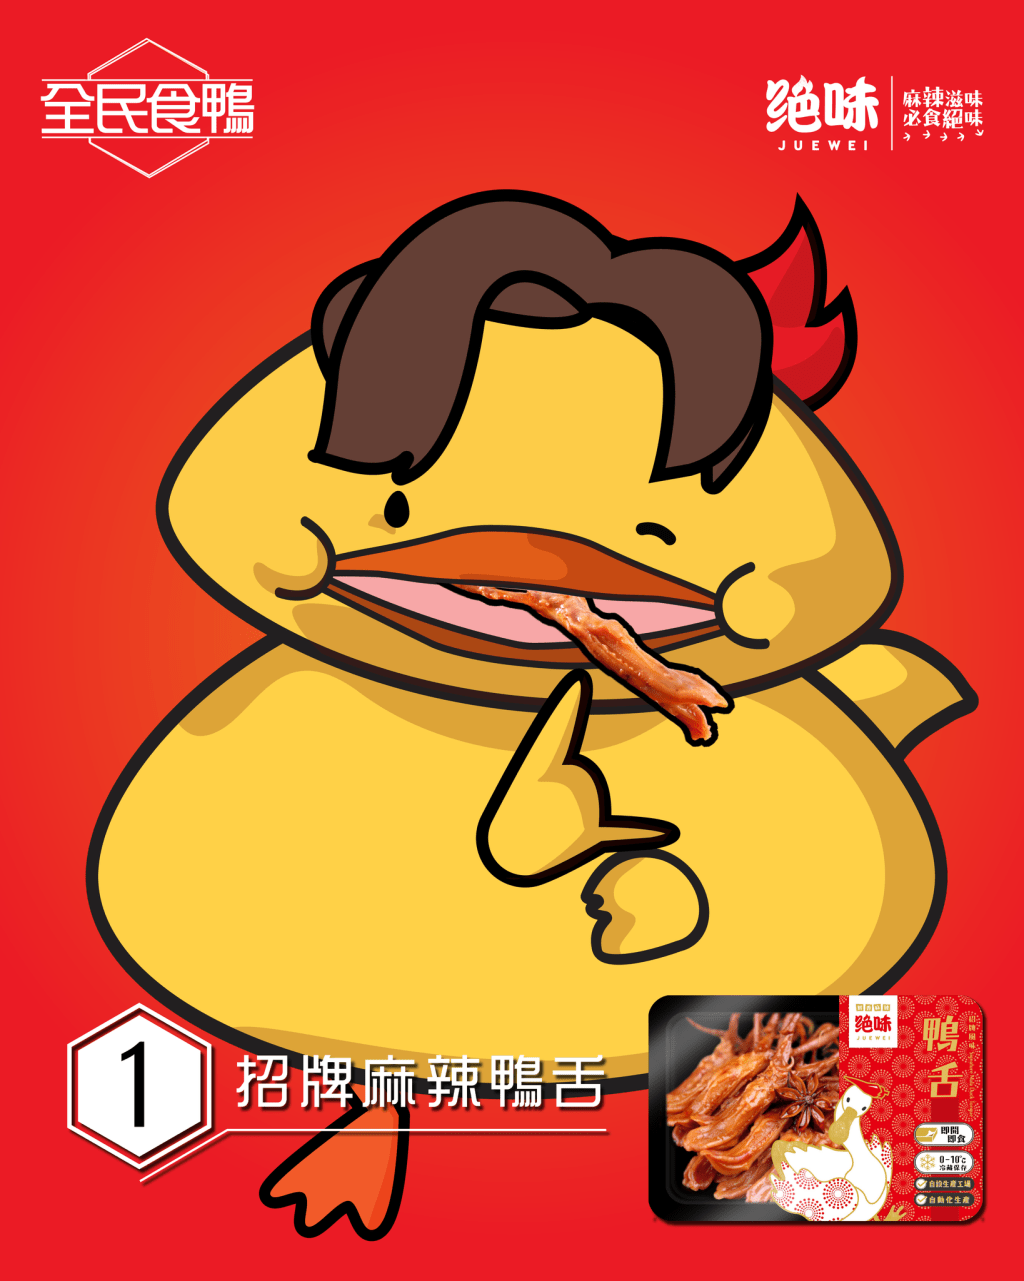 各种宣传图中，更有「吃鸭的卡通鸭」将绝味的鸭舌放在自己的鸭嘴中。